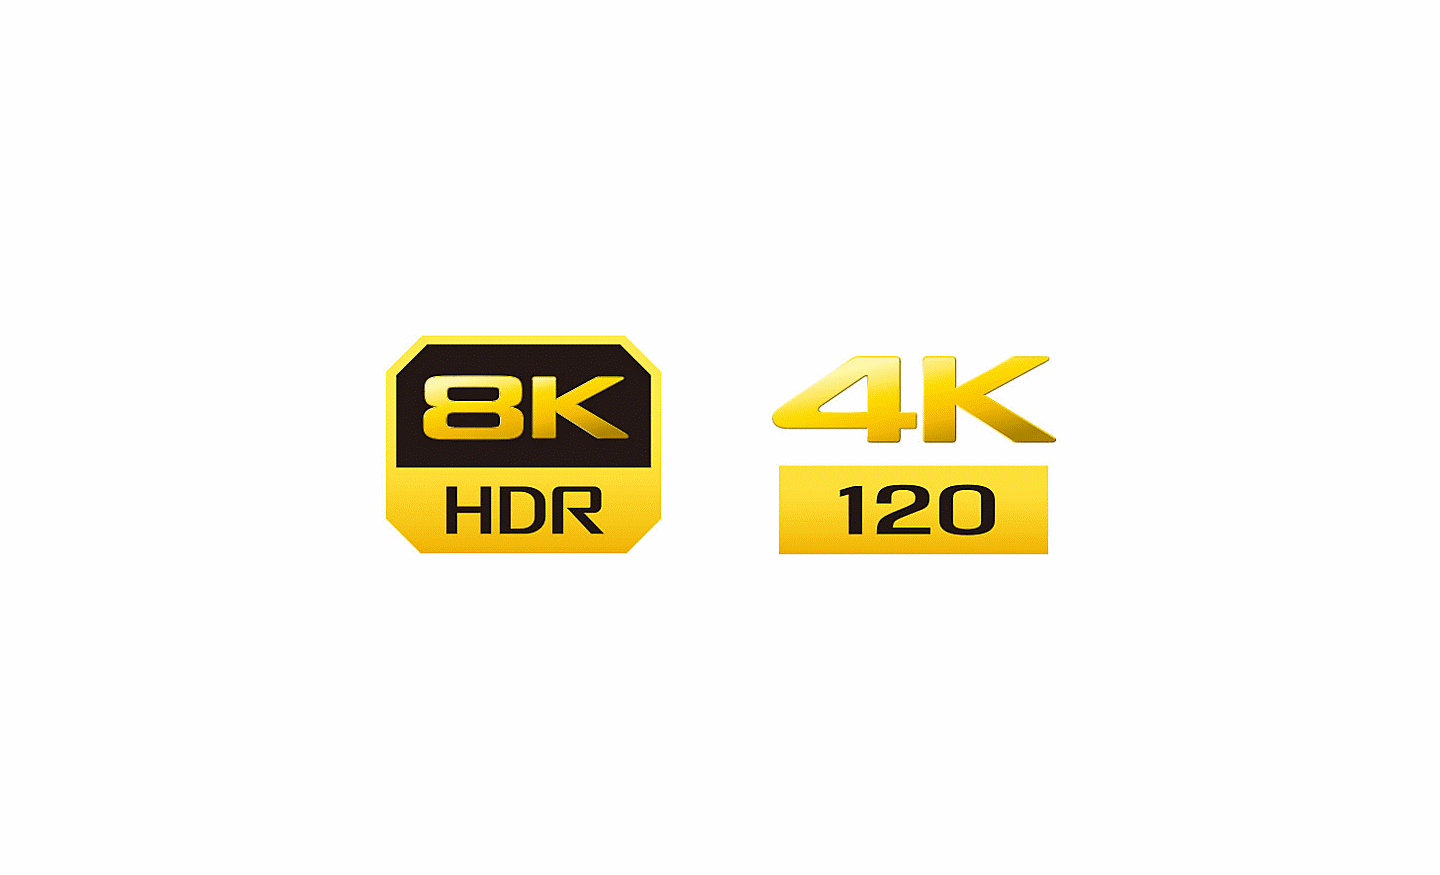 Logo de 8K HDR y 4K 120